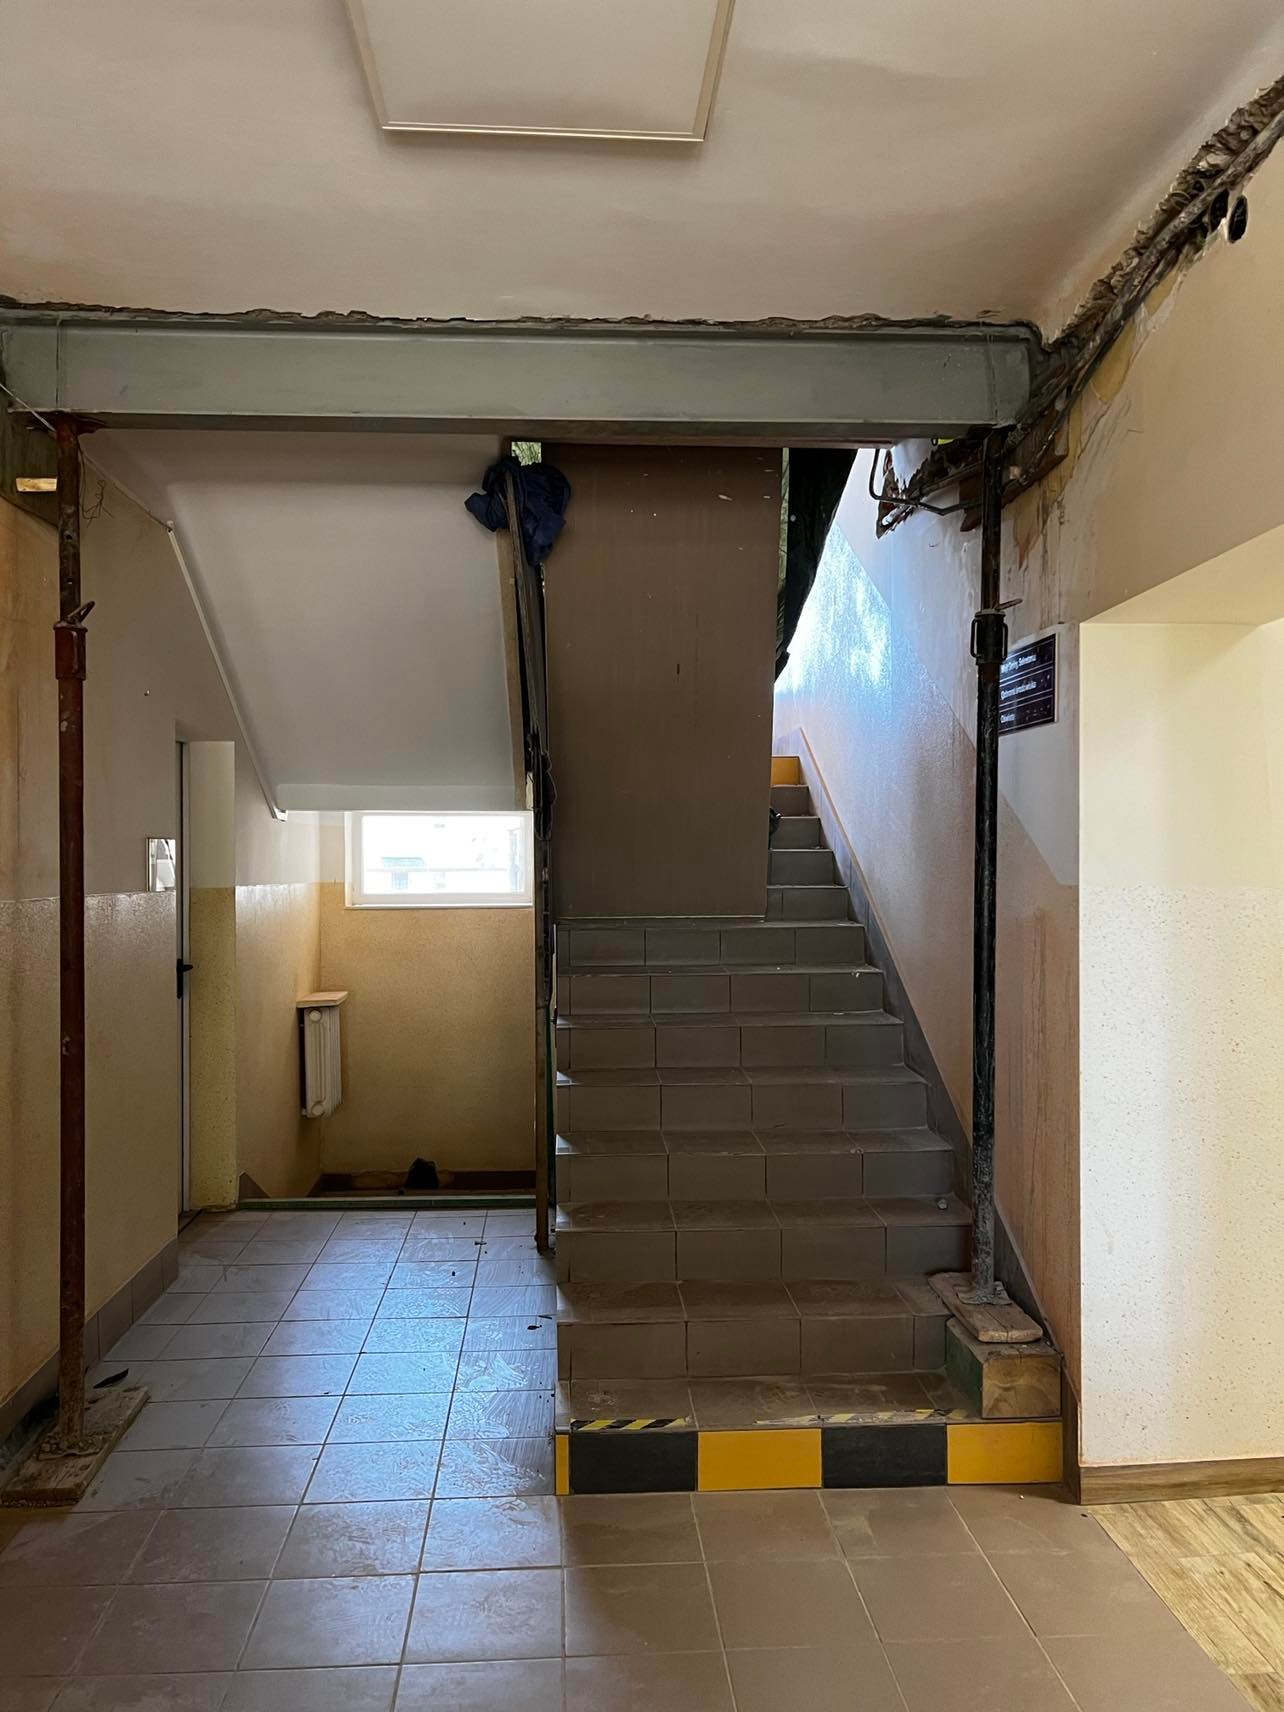 zdjęcie przedstawia klatkę schodową oraz korytarz w budynku Urzędu Gminy Wietrzychowice w trakcie remontu